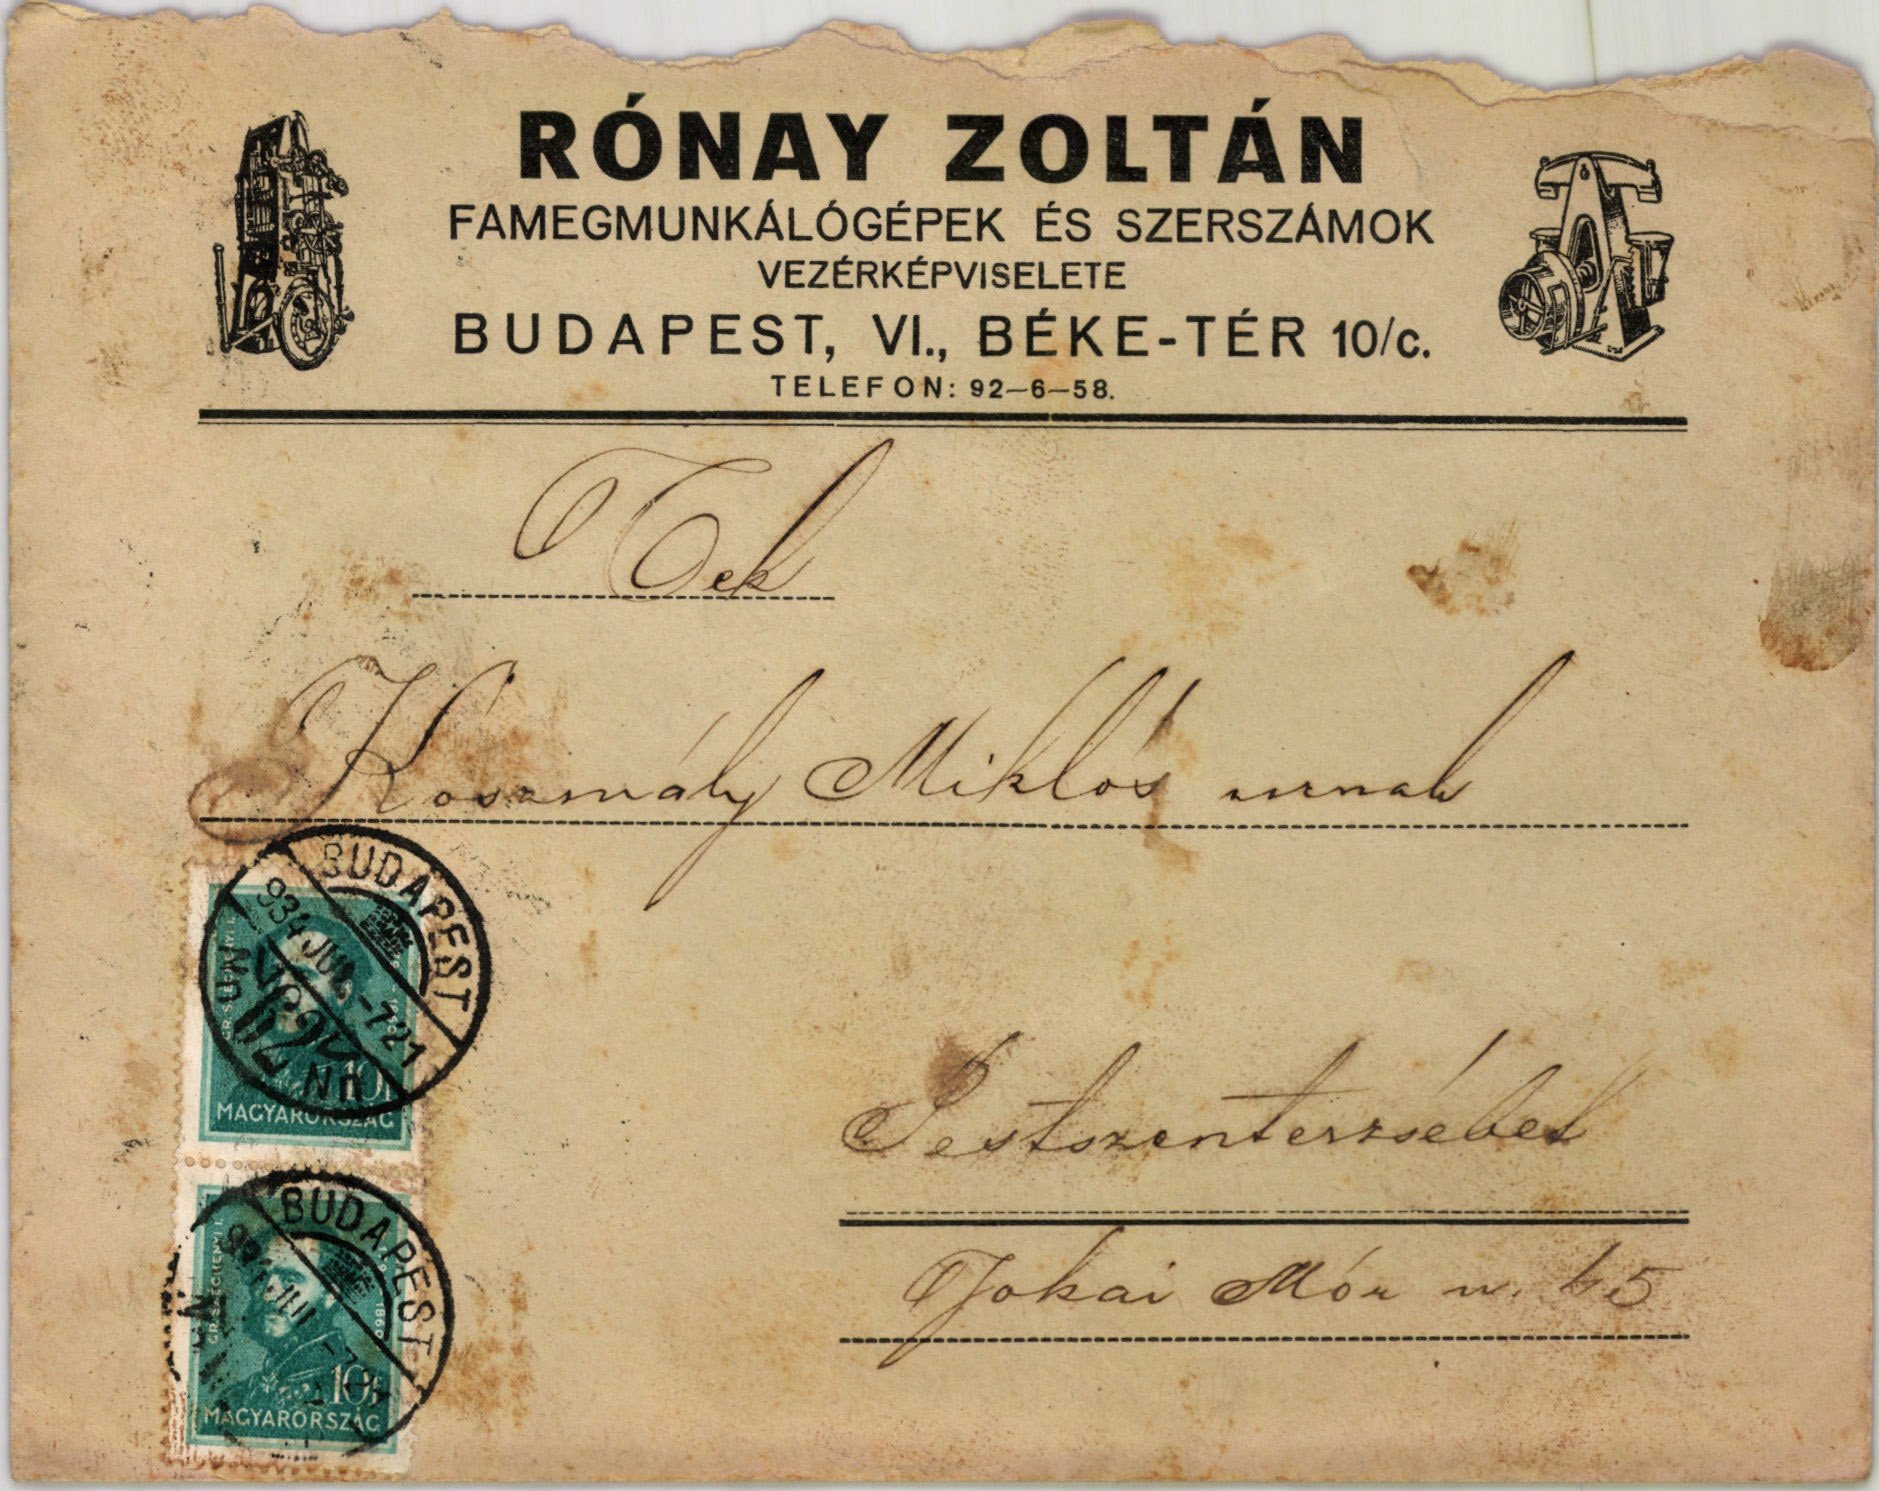 Rónay Zoltán famegmunkálógépek és szerszámok vezérképviselete (Magyar Kereskedelmi és Vendéglátóipari Múzeum CC BY-NC-SA)